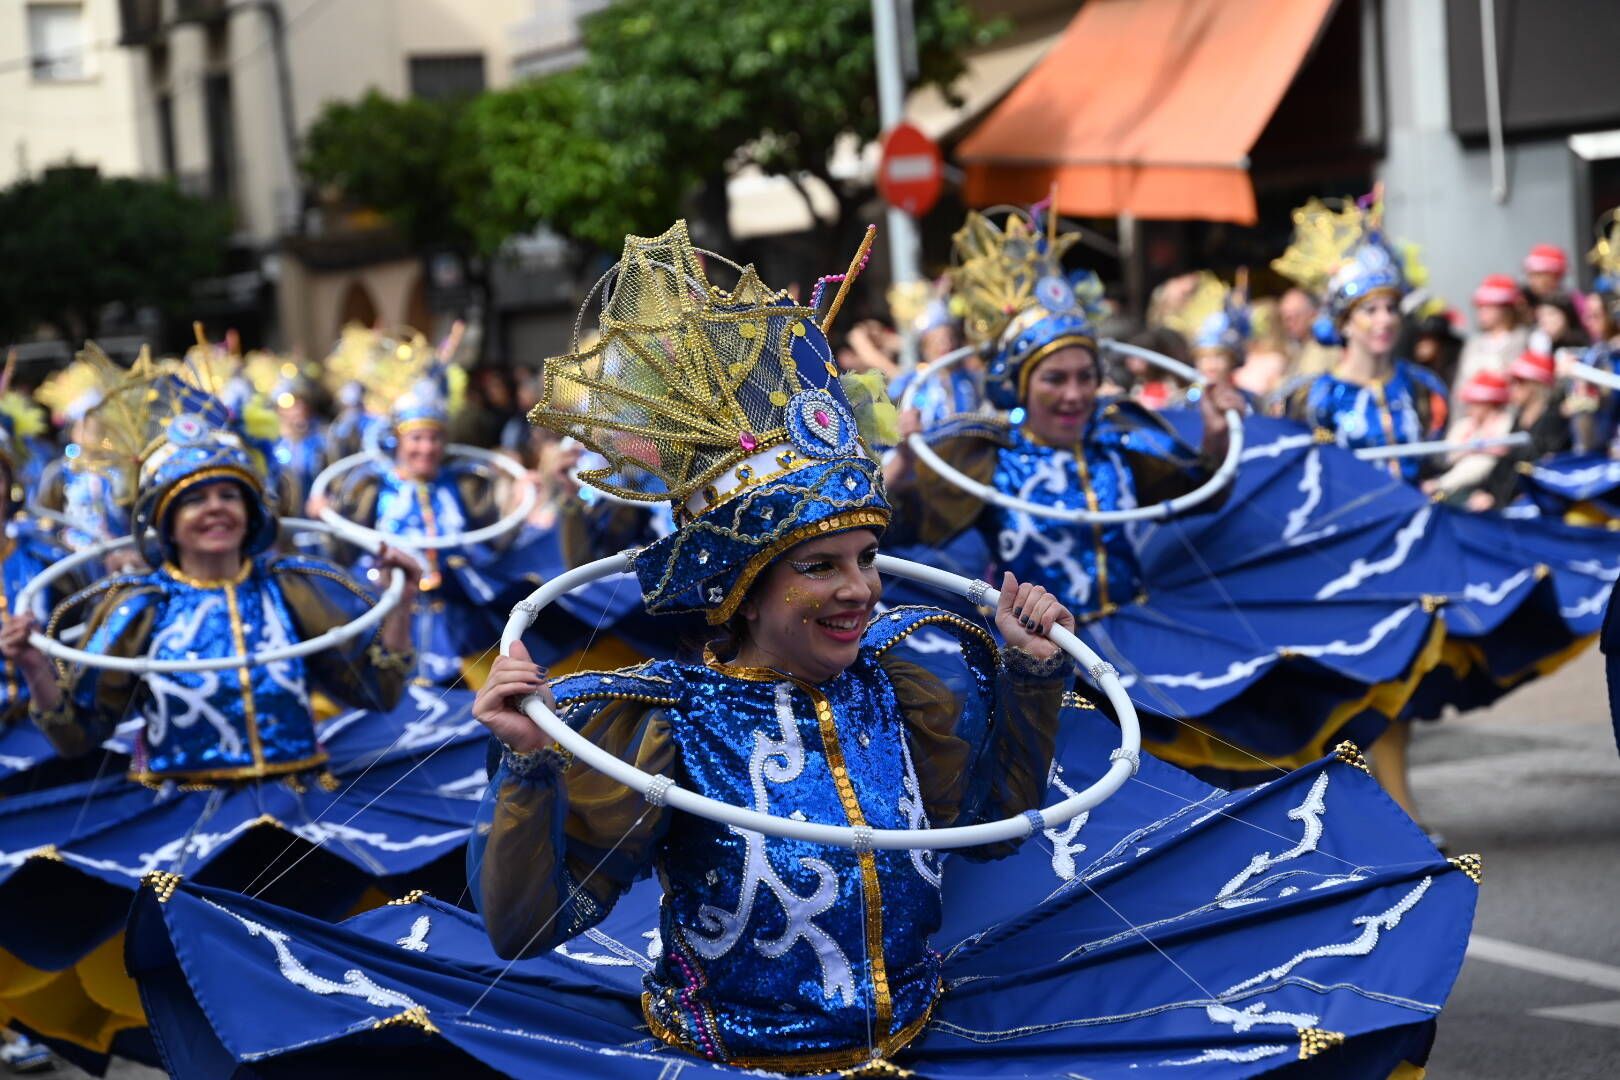 El Gran Desfile del Carnval de Badajoz, en imágenes.